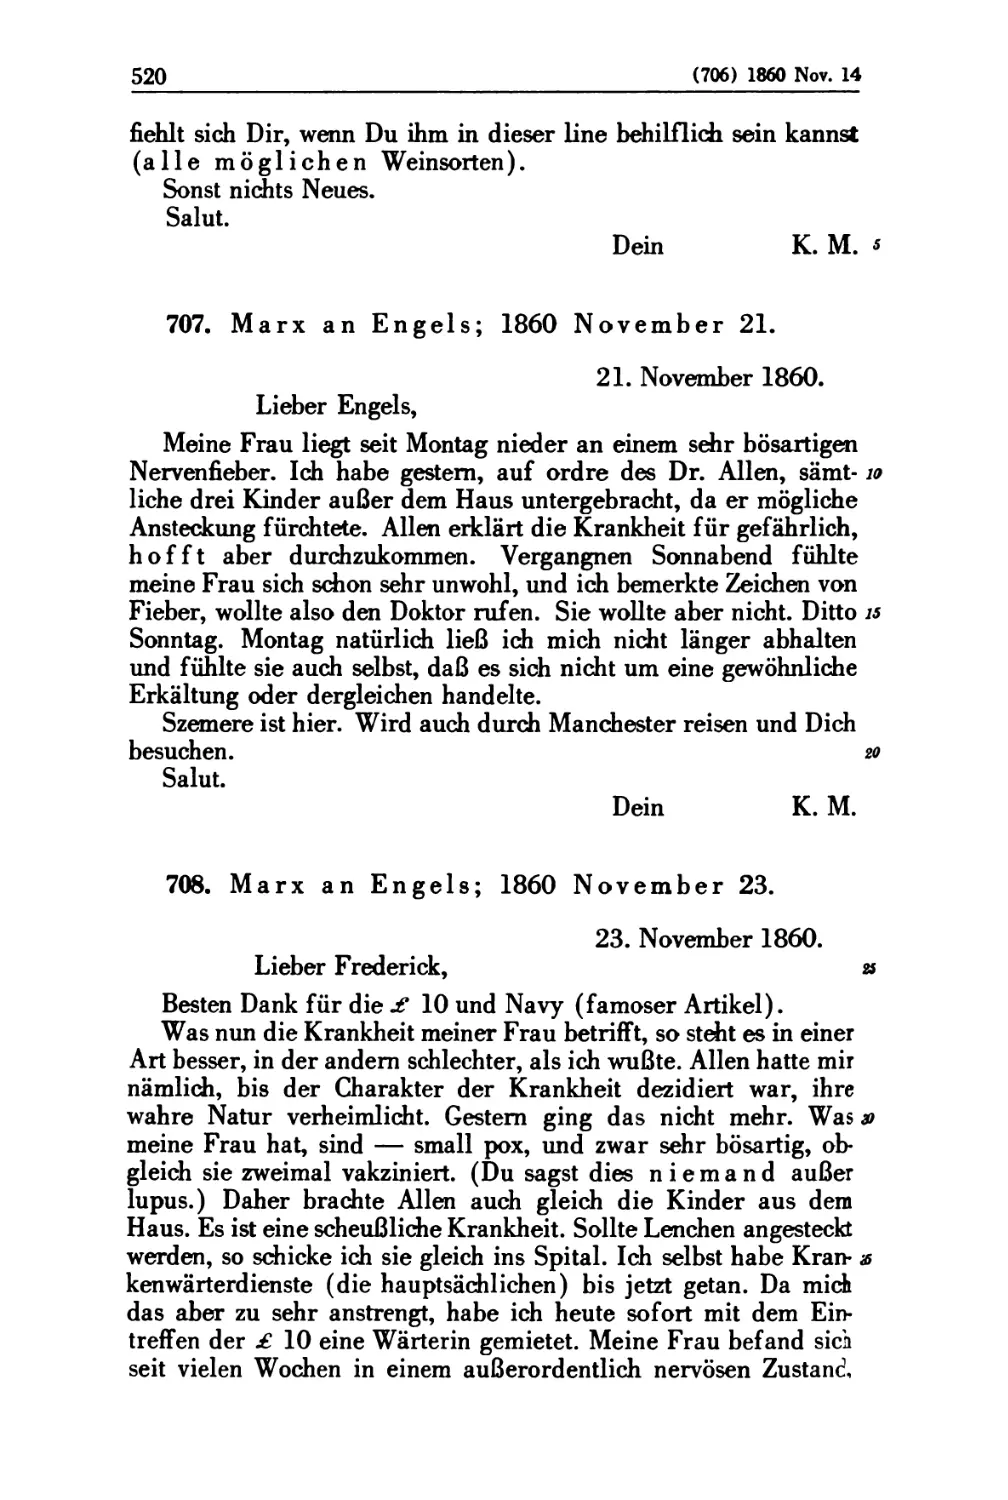 707. Marx an Engels; 1860 November 21
708. Marx an Engels; 1860 November 23